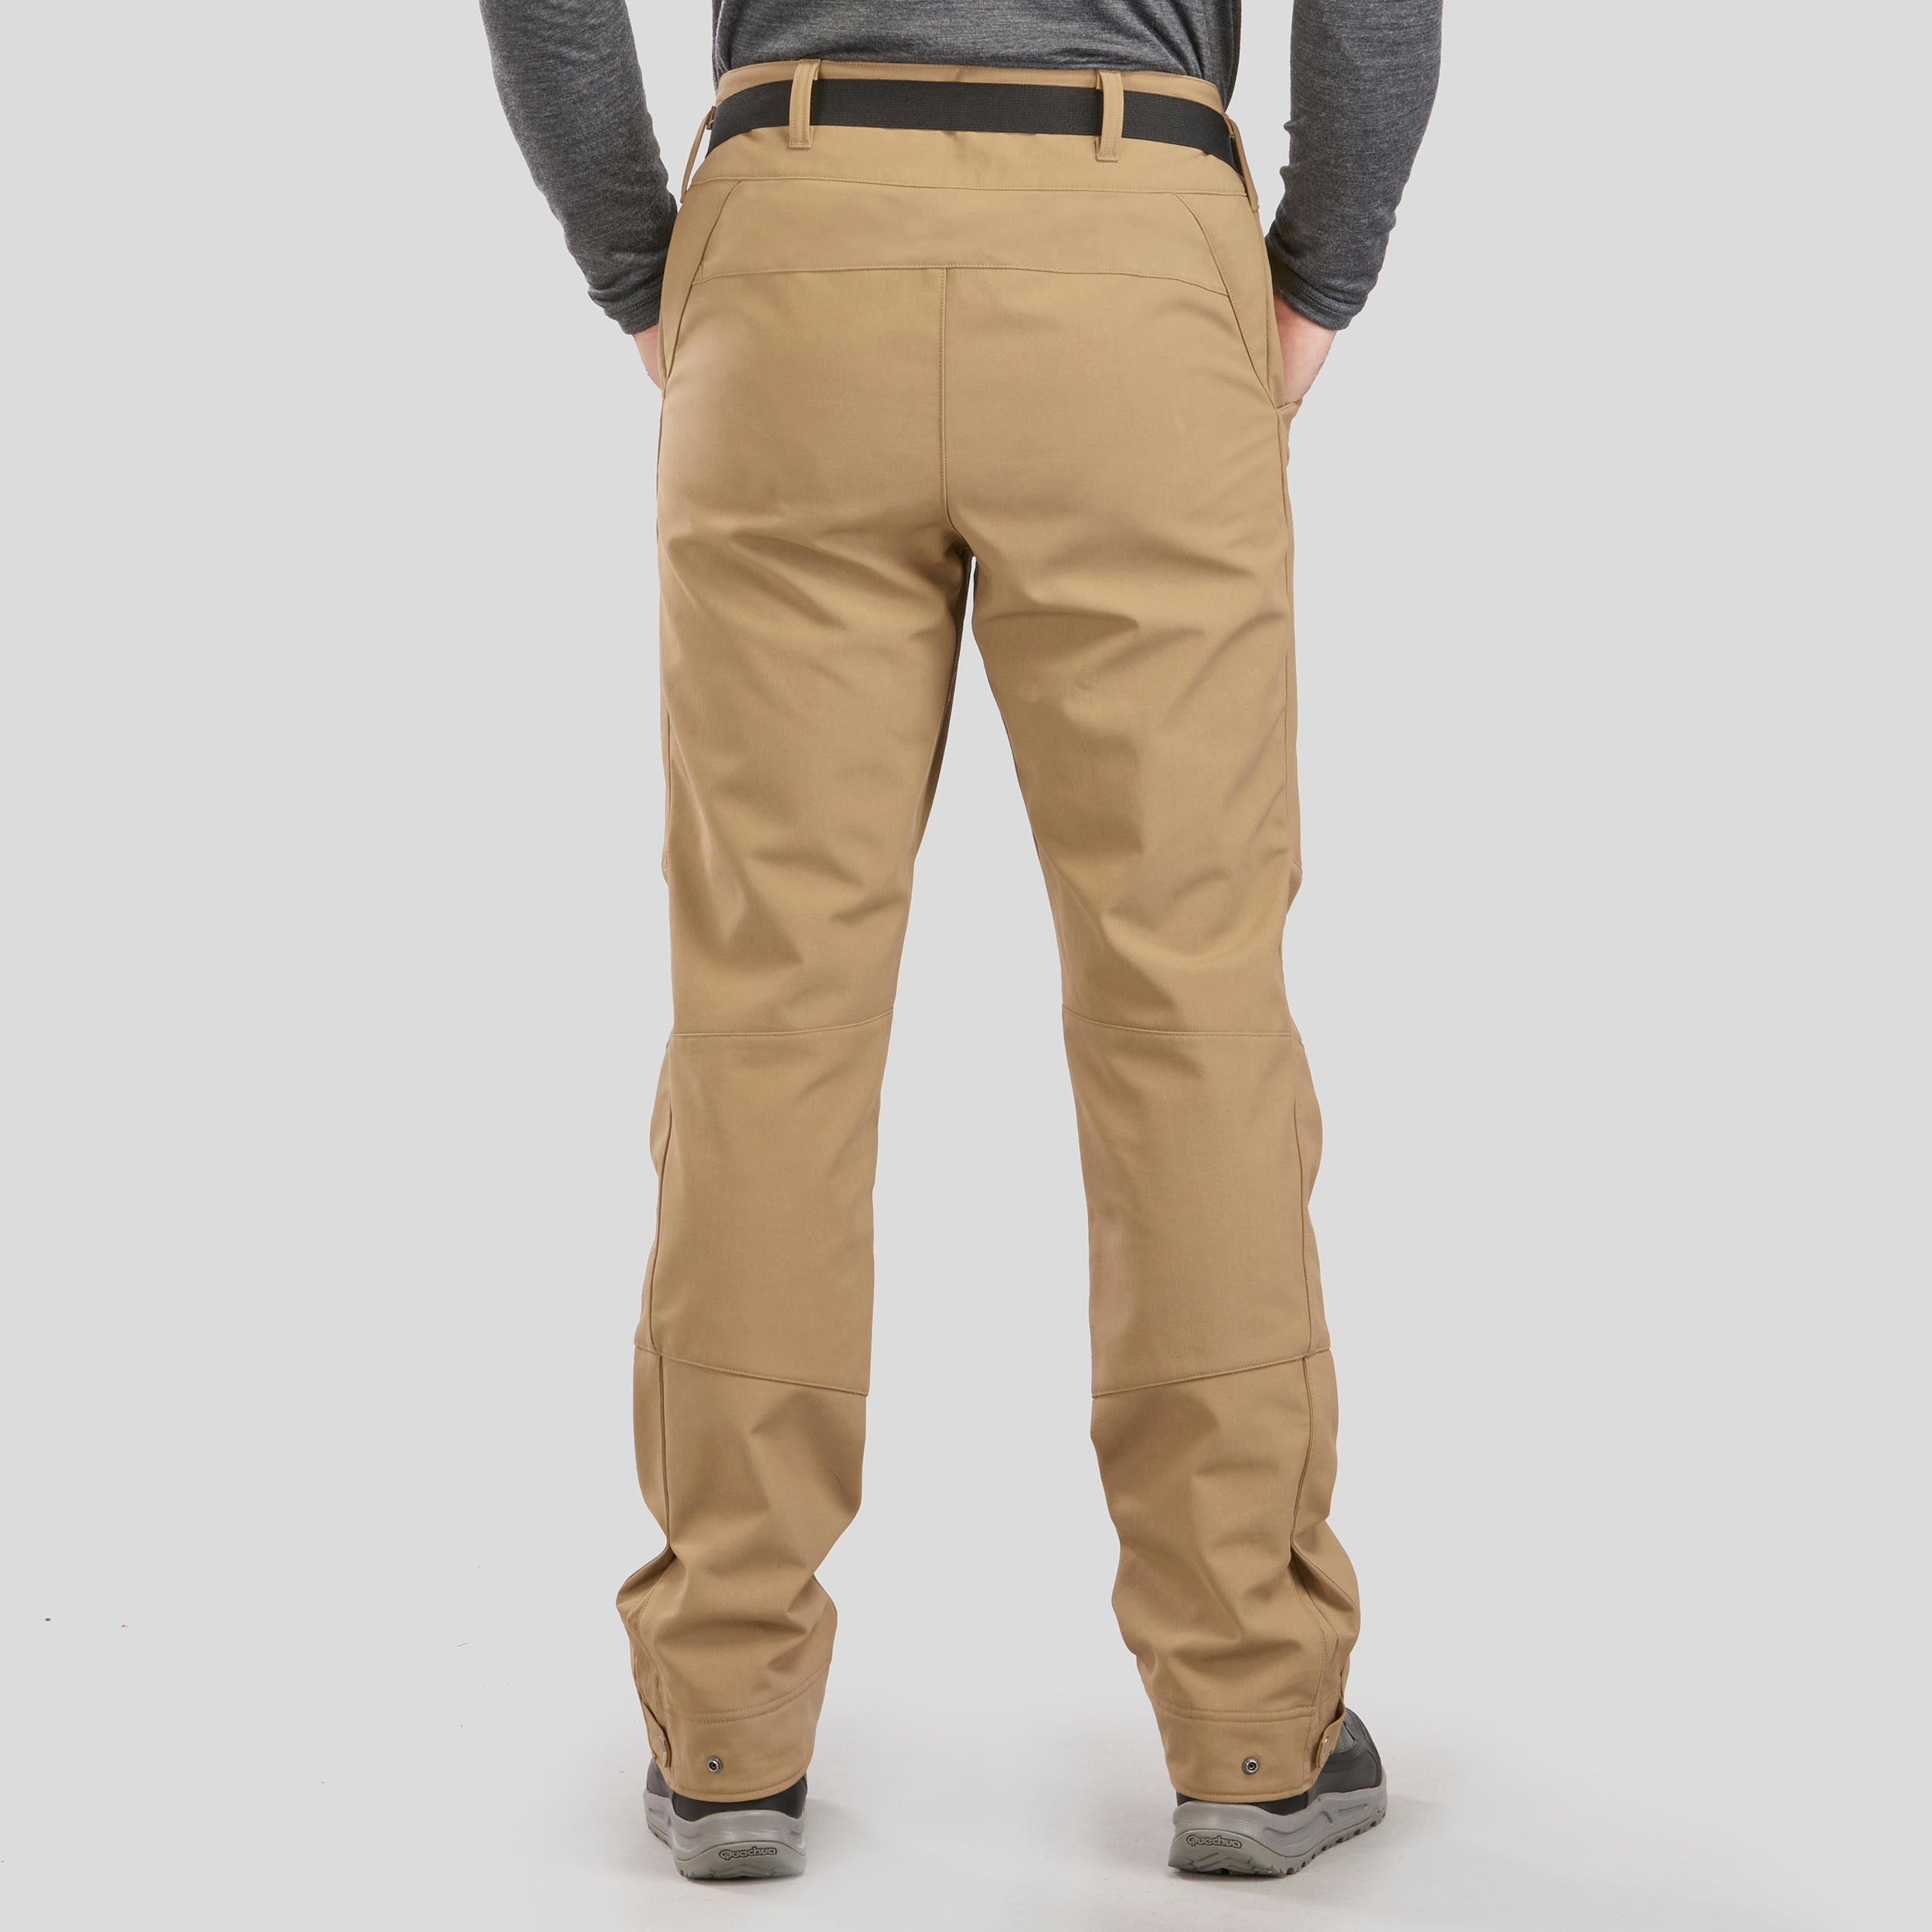 Pantalon chaud homme – SH 500 noir